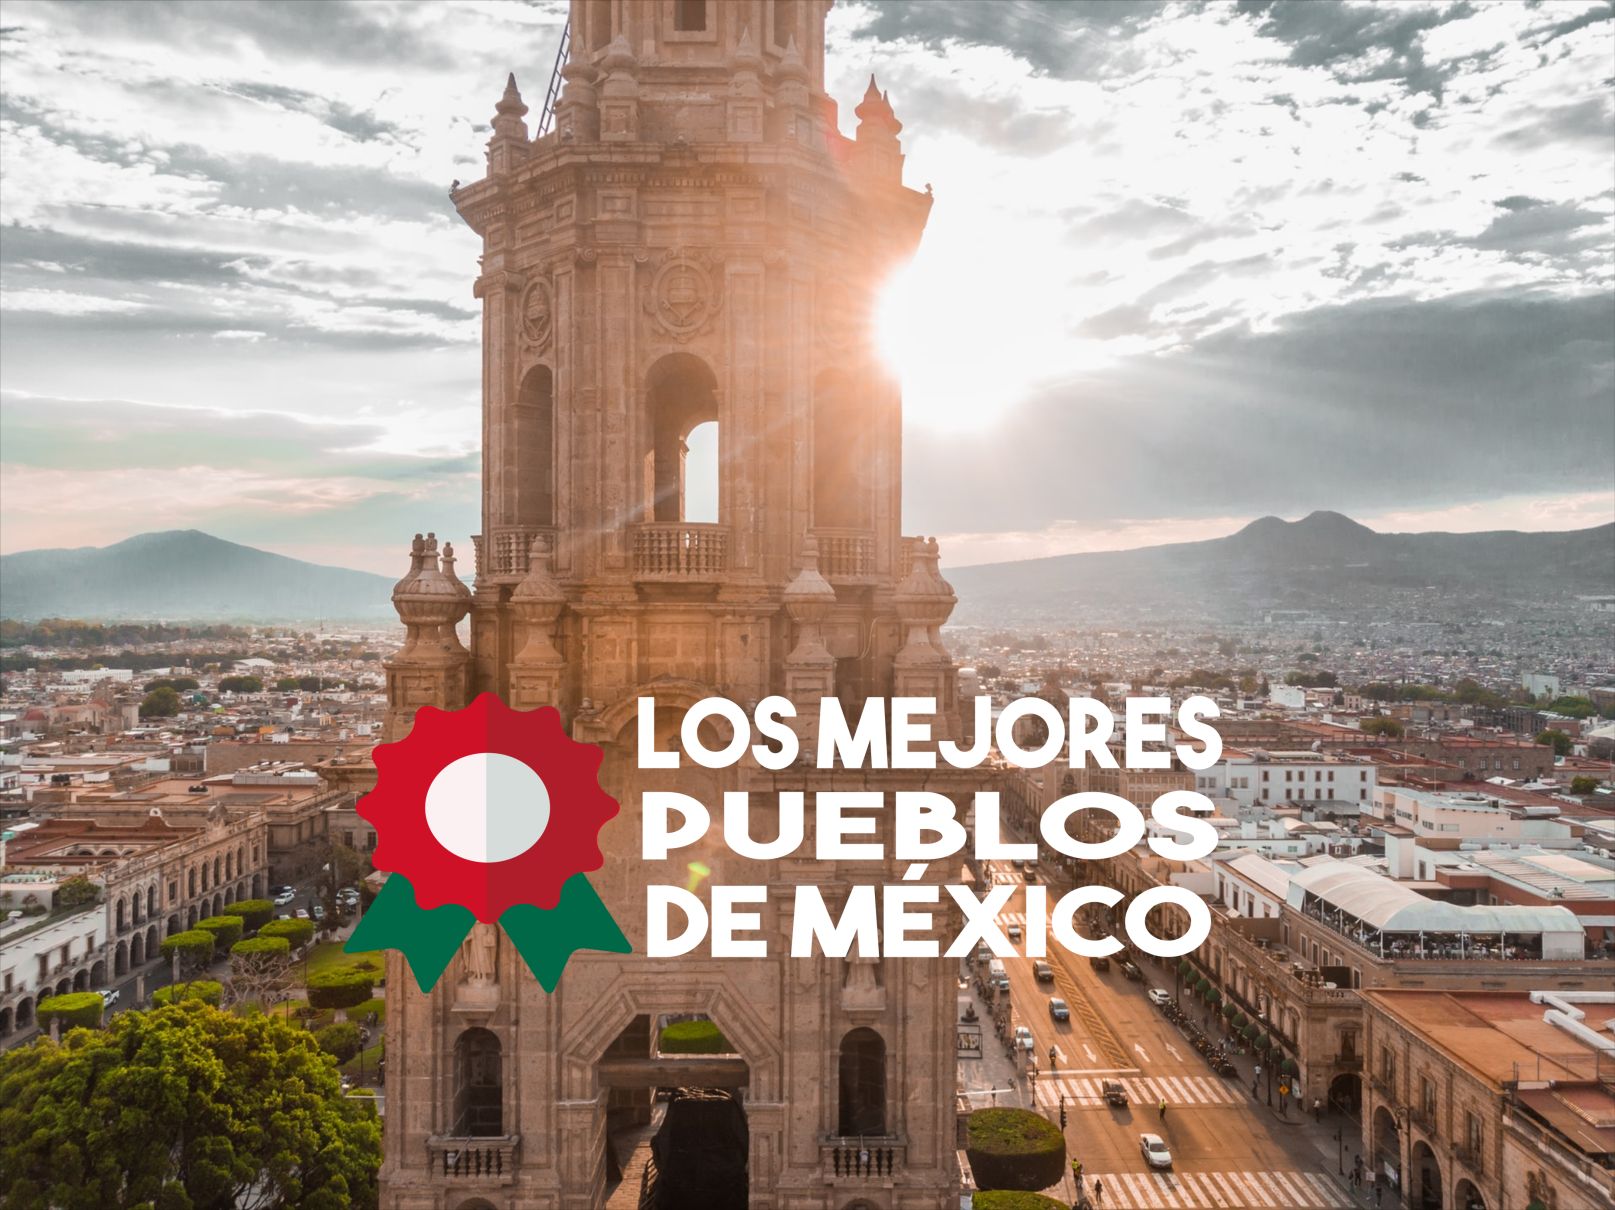 Los mejores pueblos de México